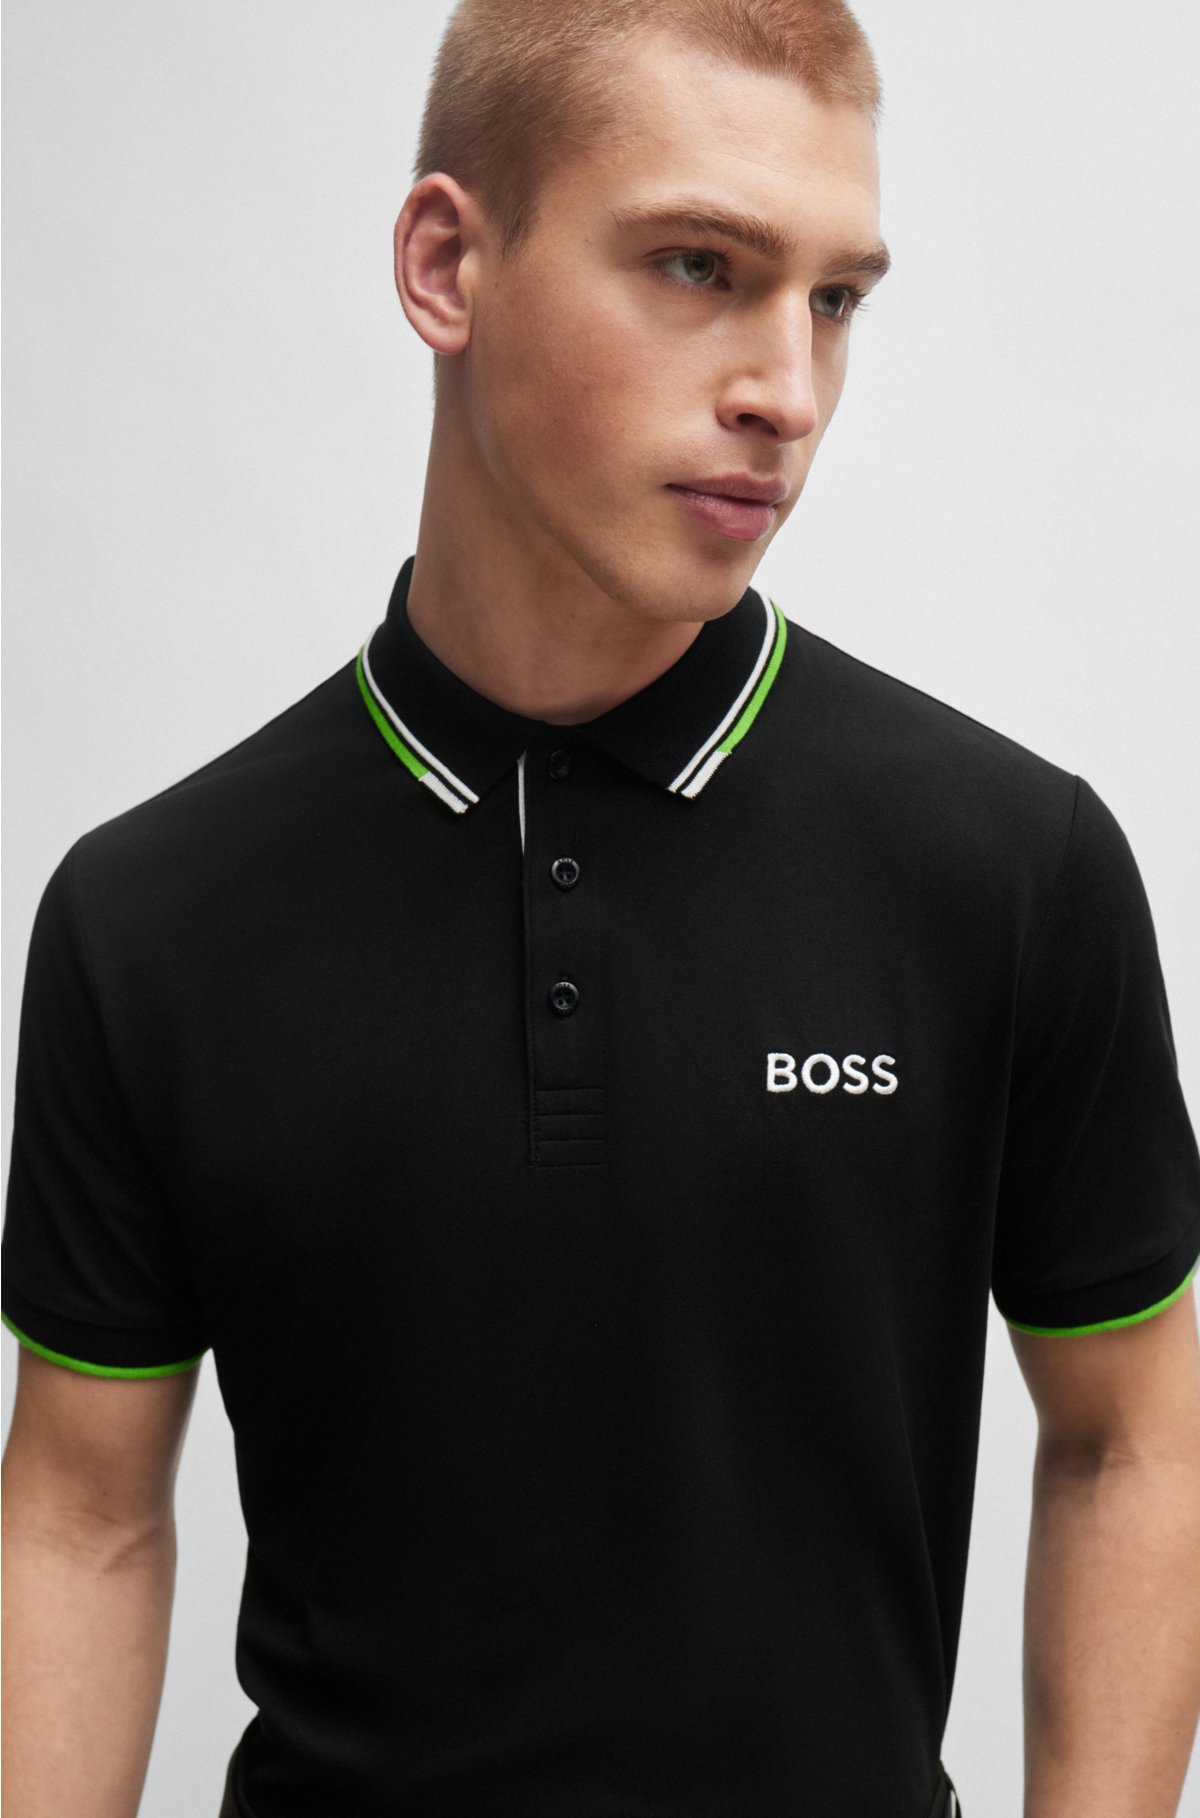 Comparación juicio cascada BOSS - Polo shirt with contrast logos